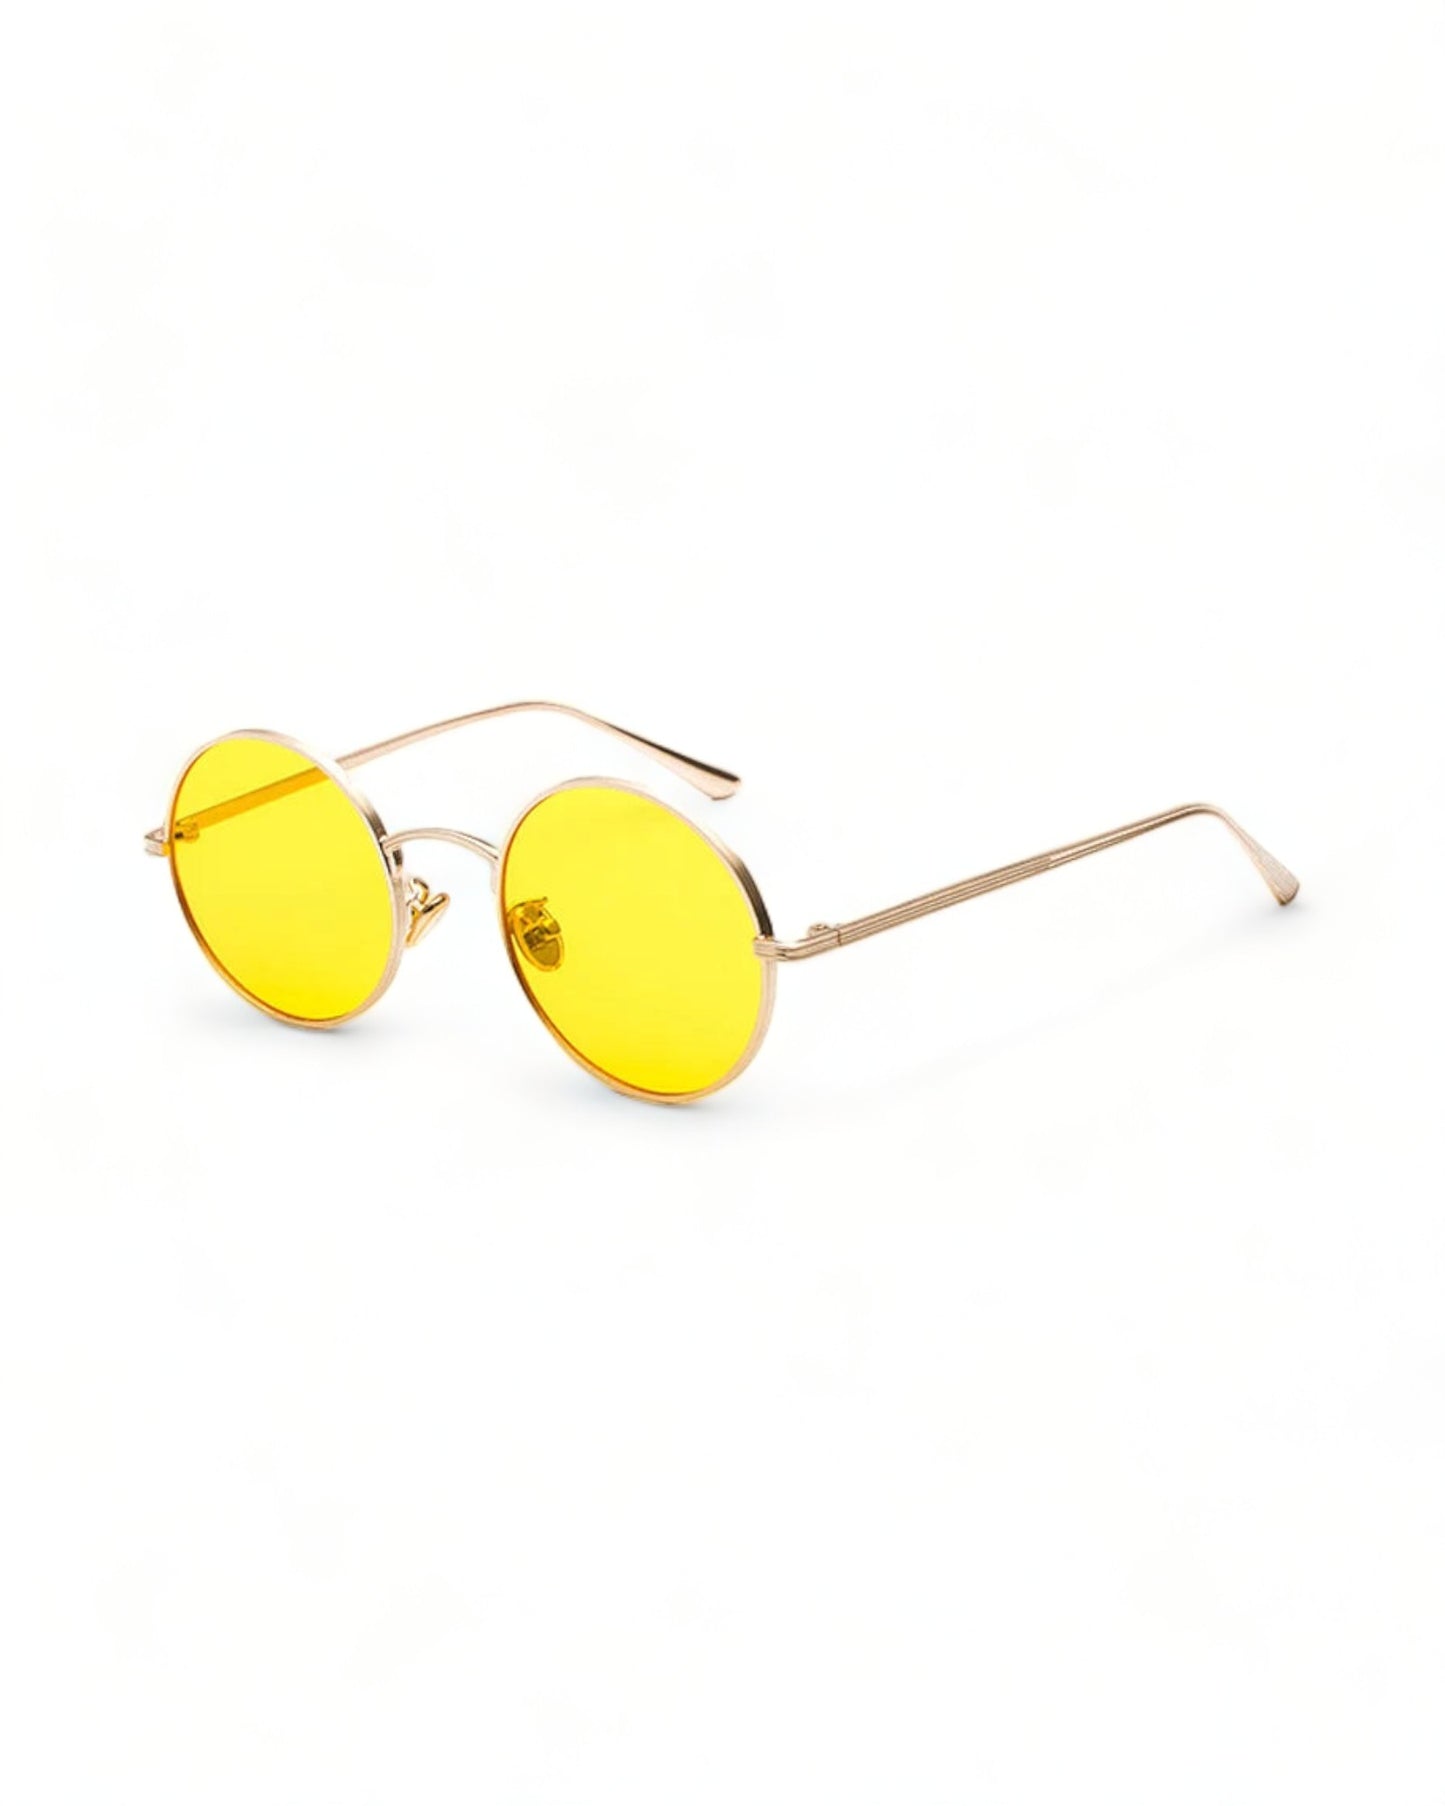 Sunglasses yellow